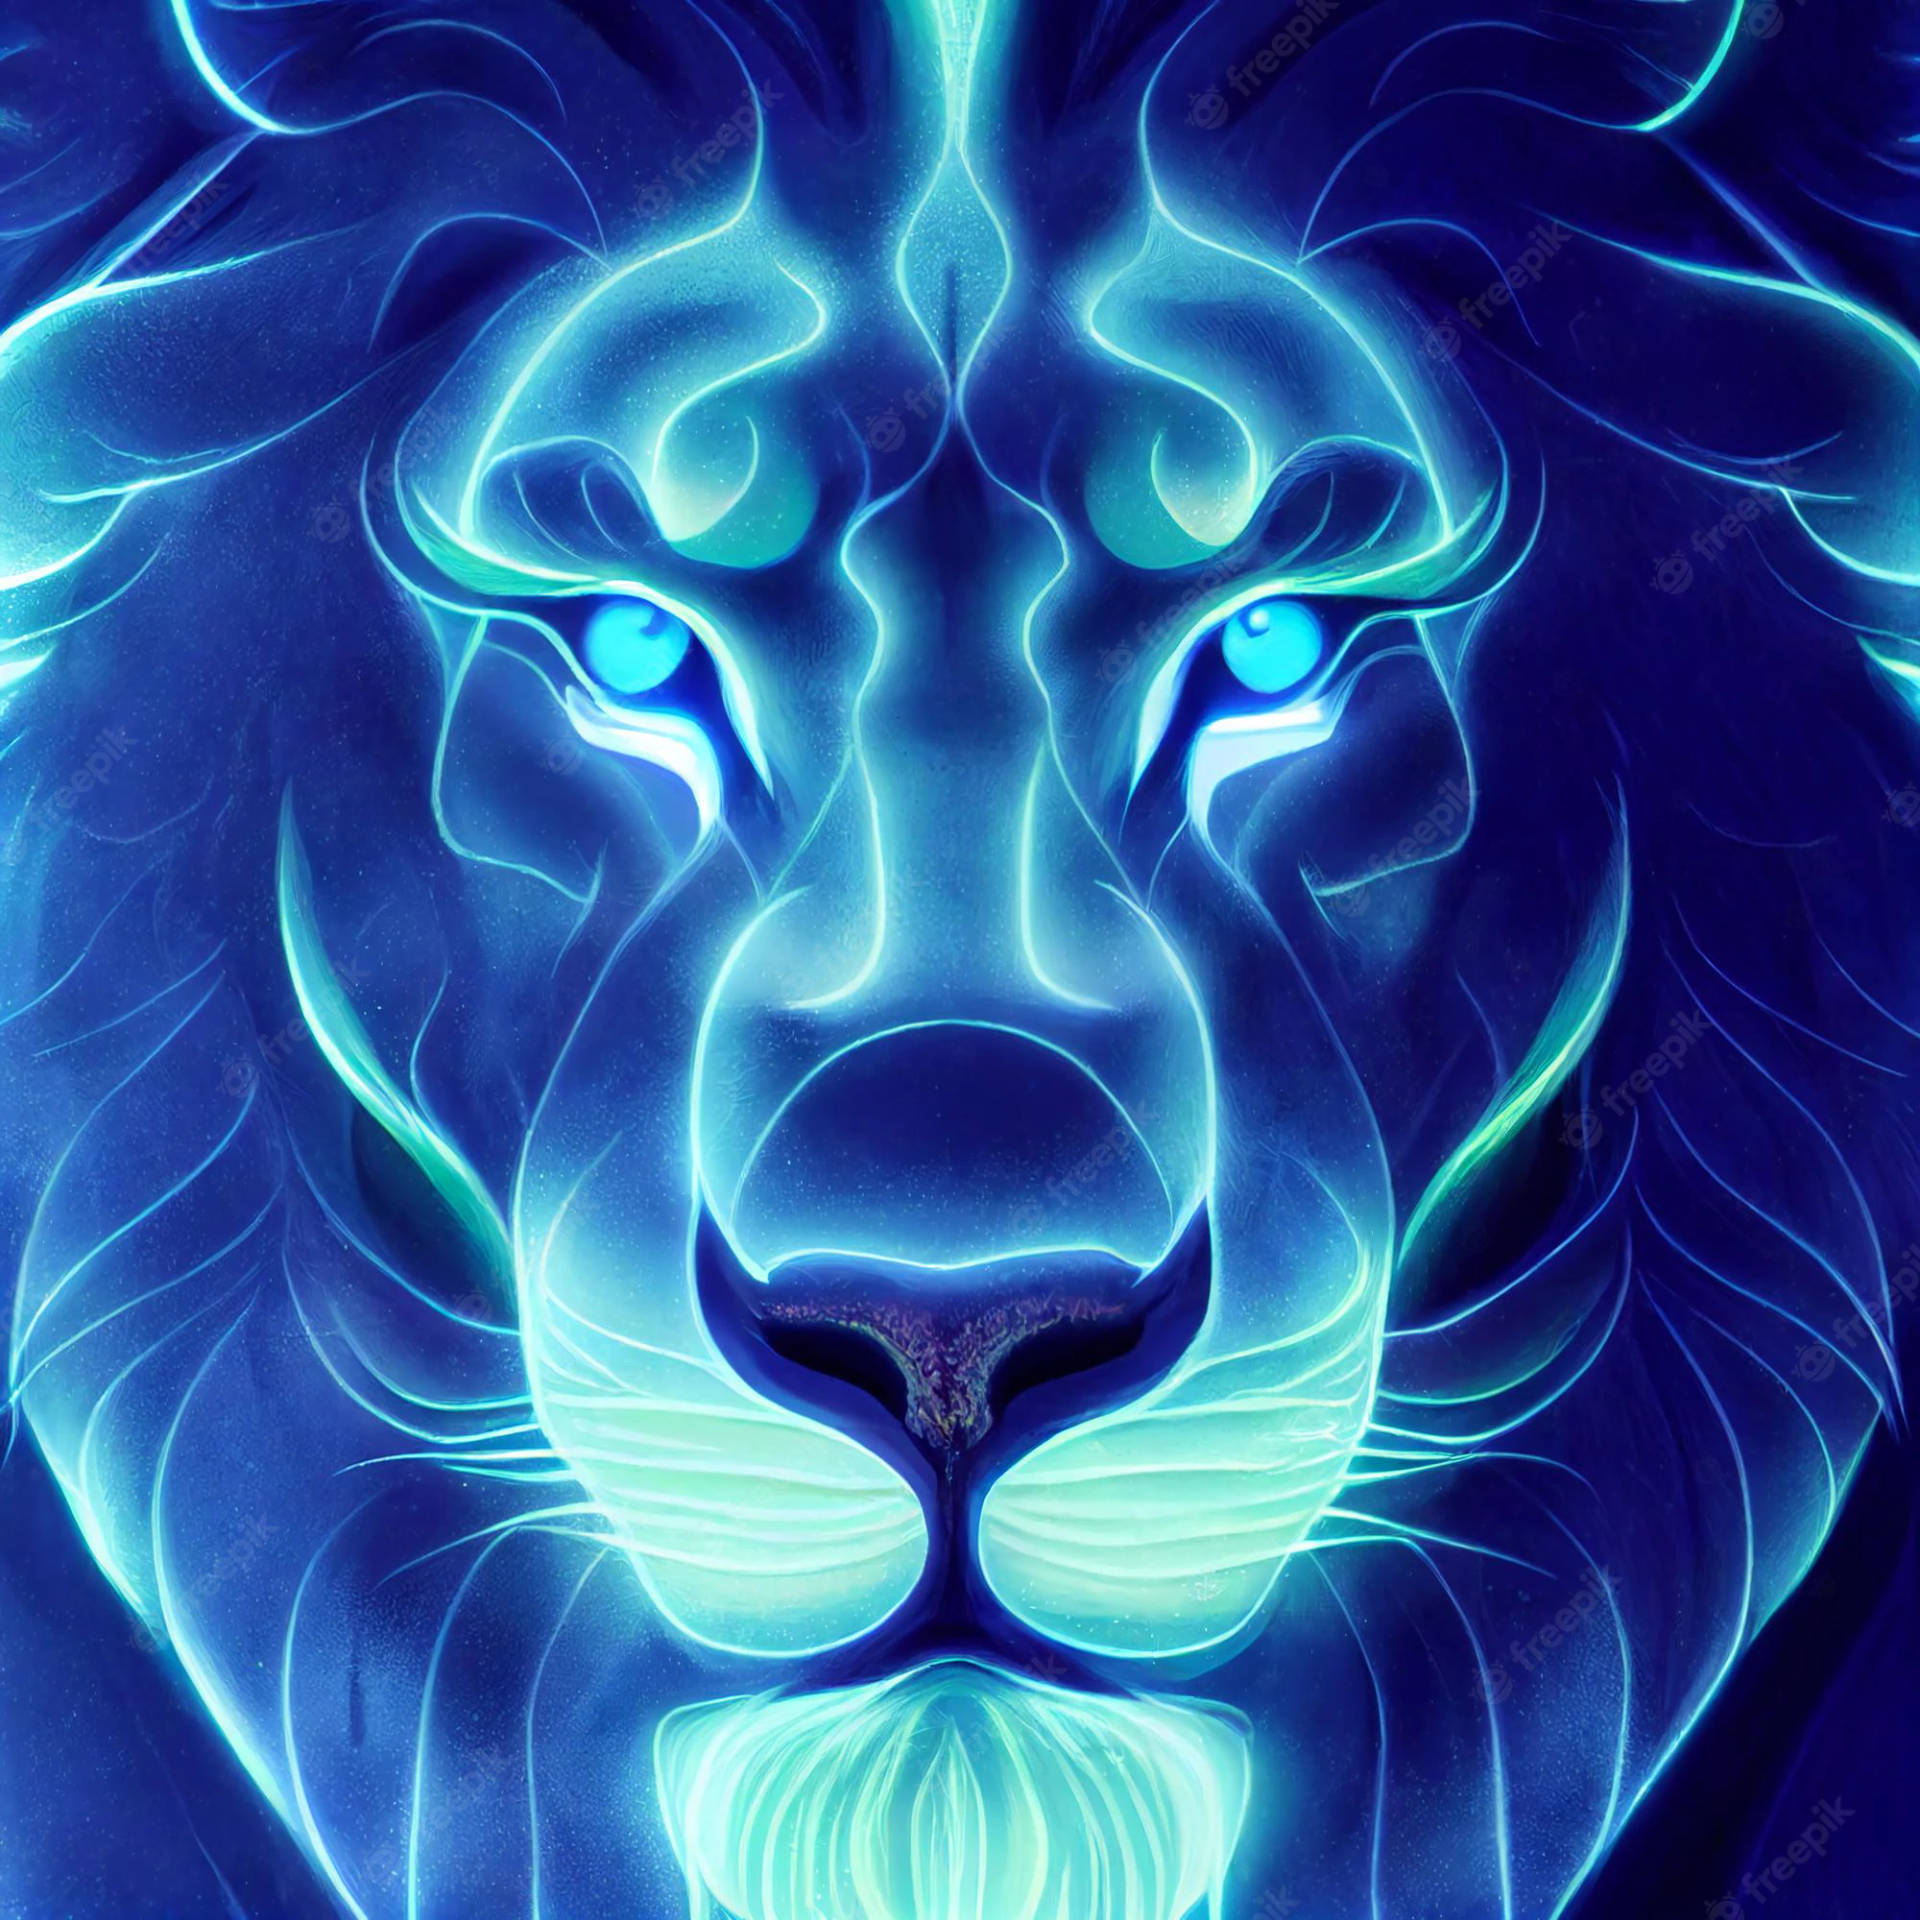 Hermosailustración De Un León Azul Brillante Fondo de pantalla